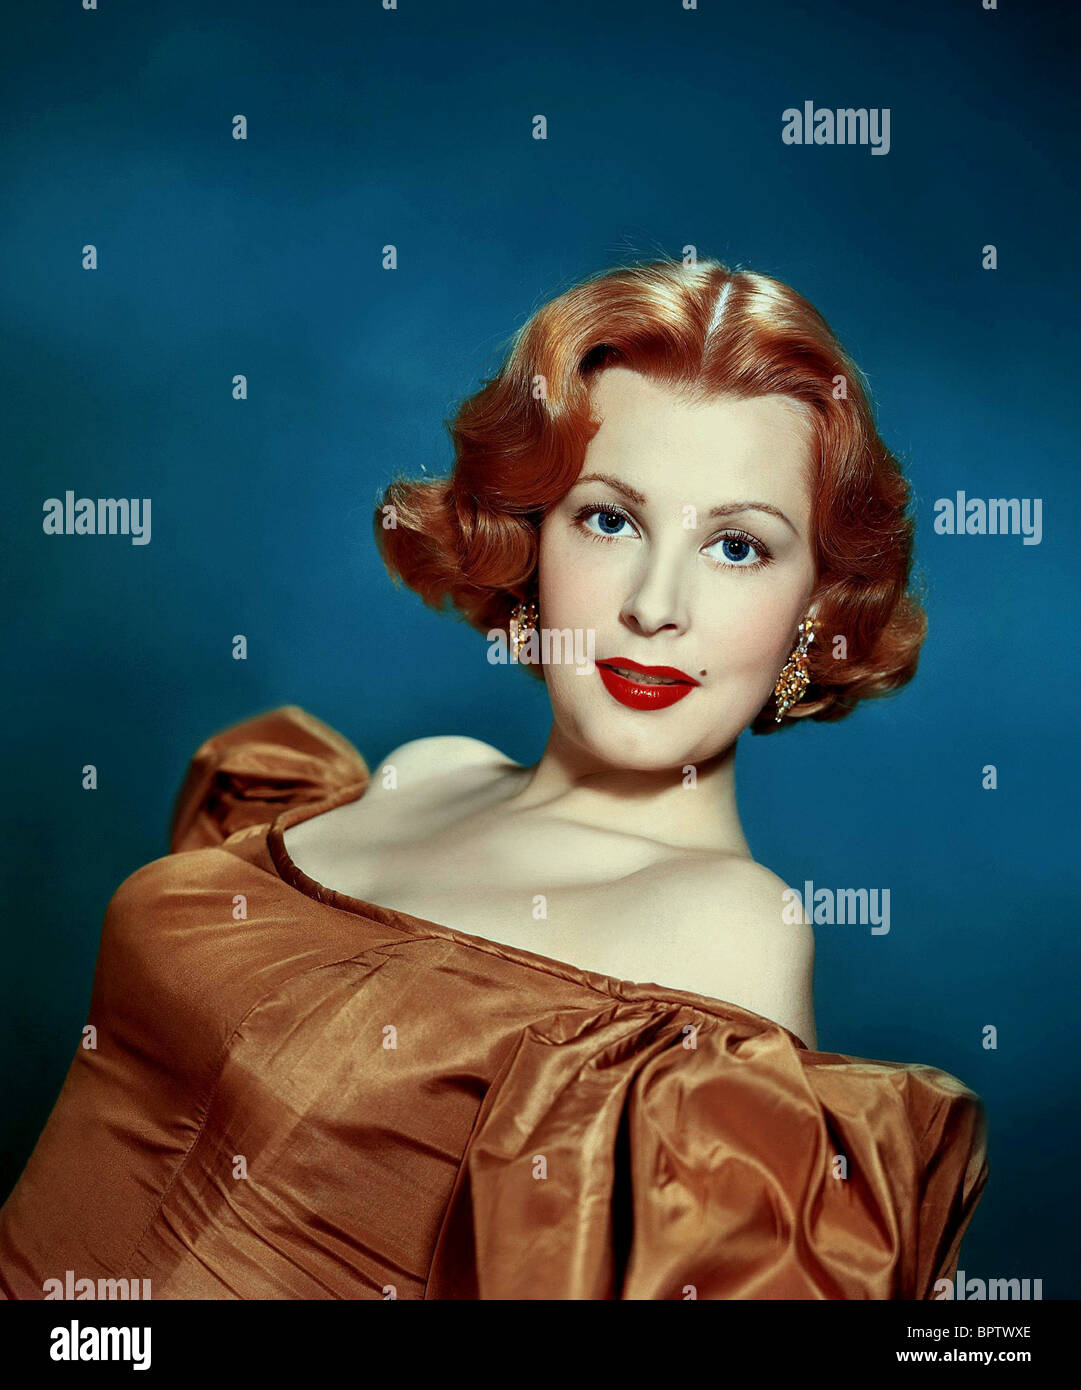 ARLENE DAHL ACTRESS (1954) Stock Photo